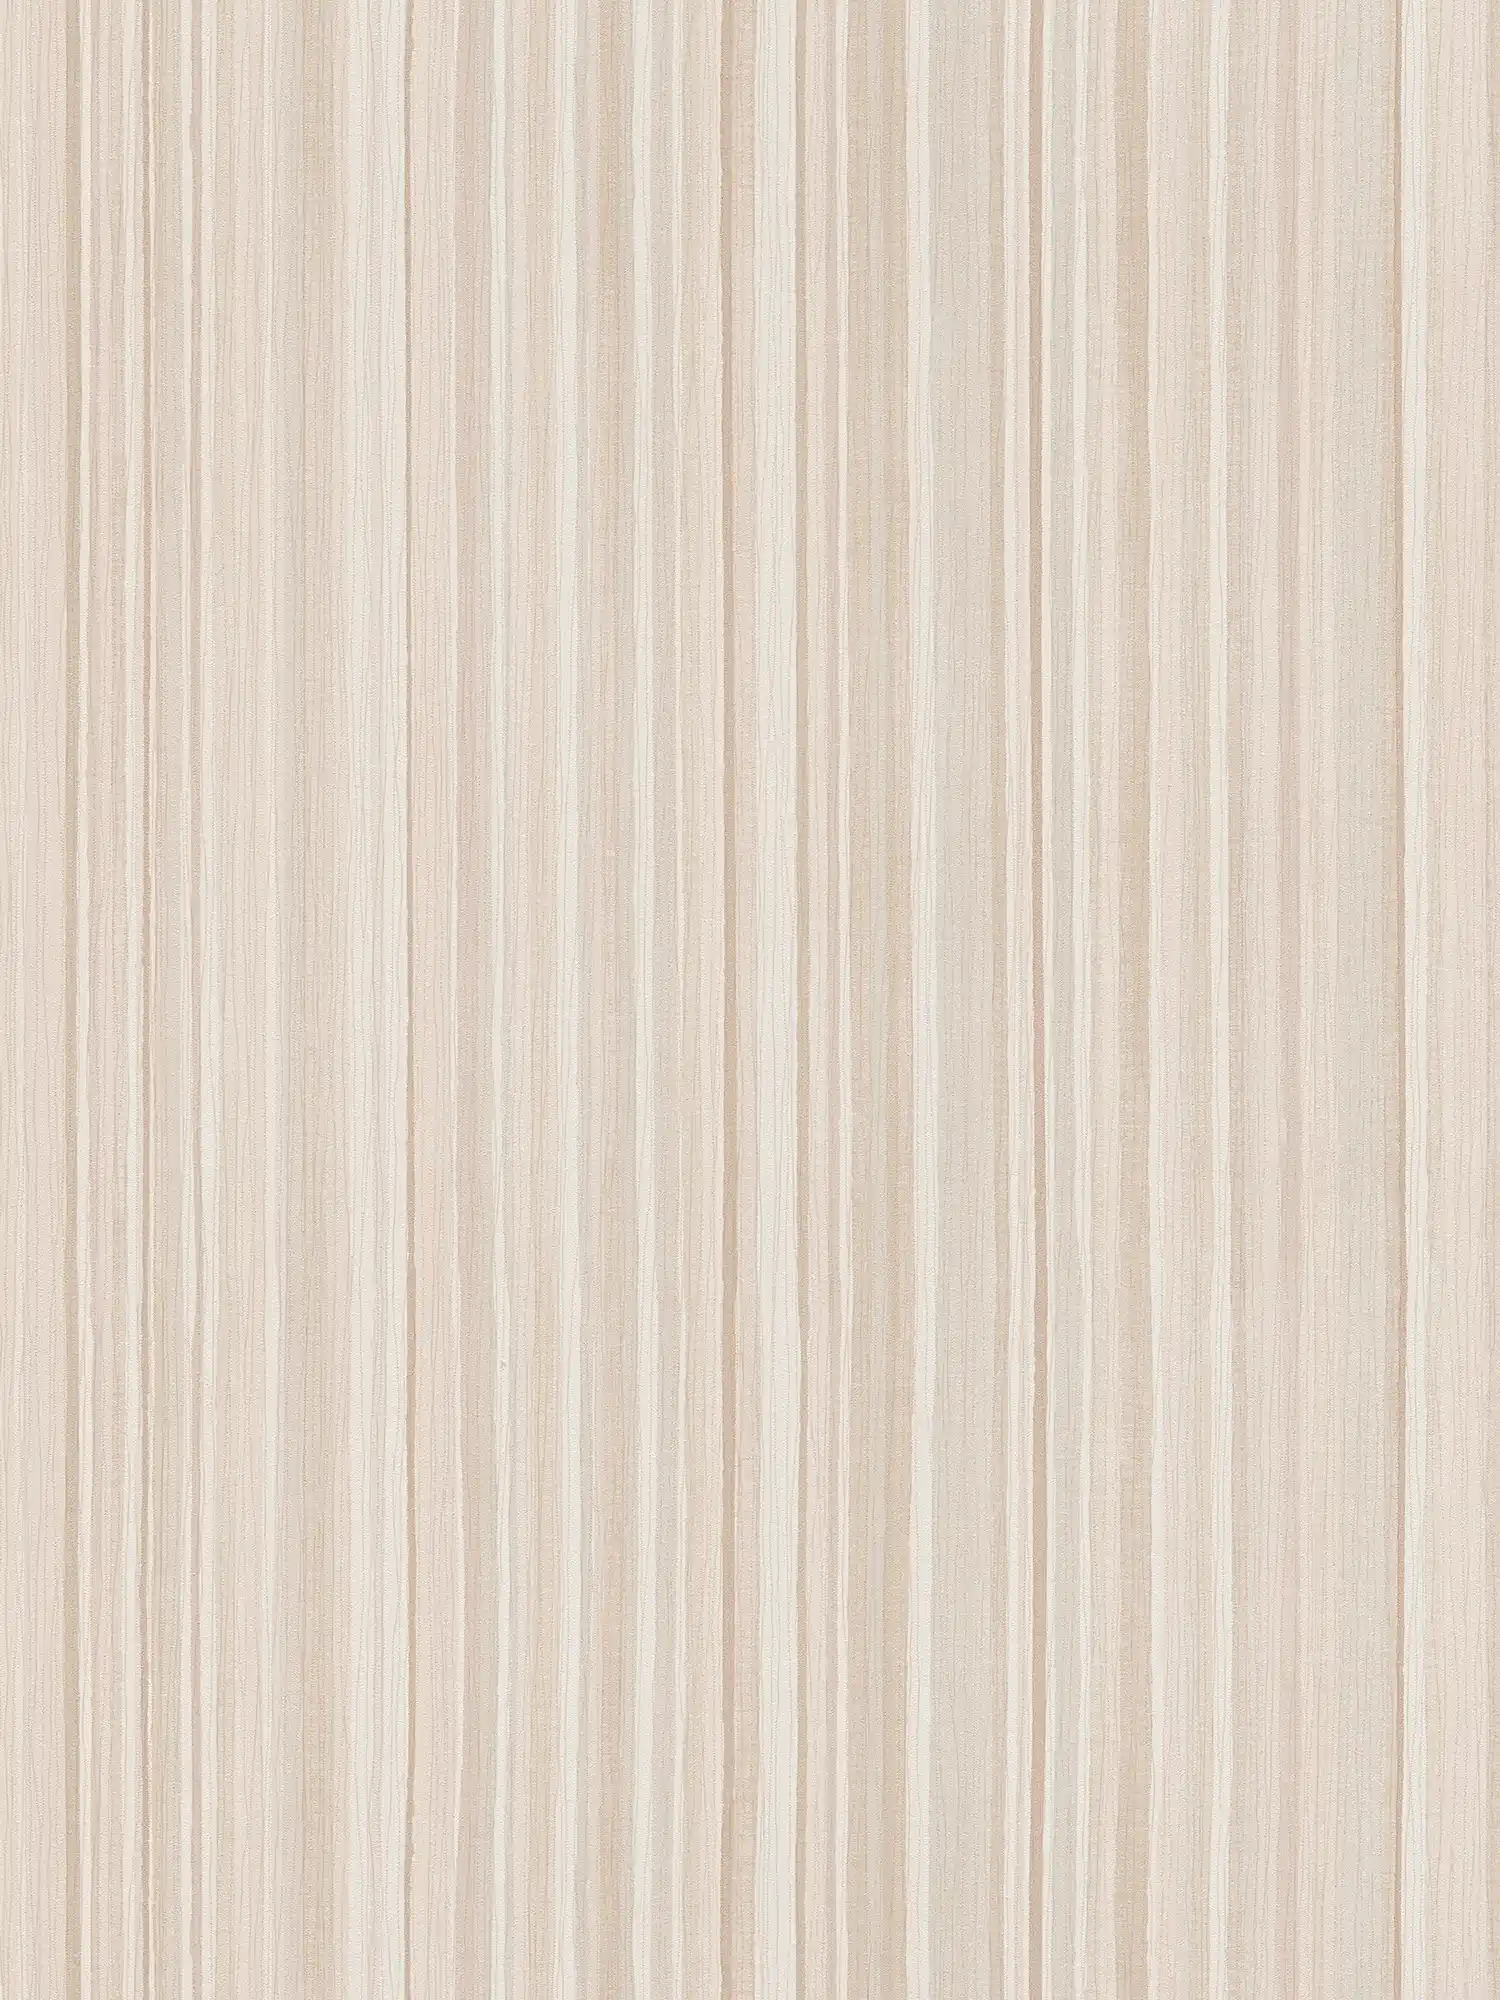 Streifen-Tapete mit schmalem Linienmuster – Beige
